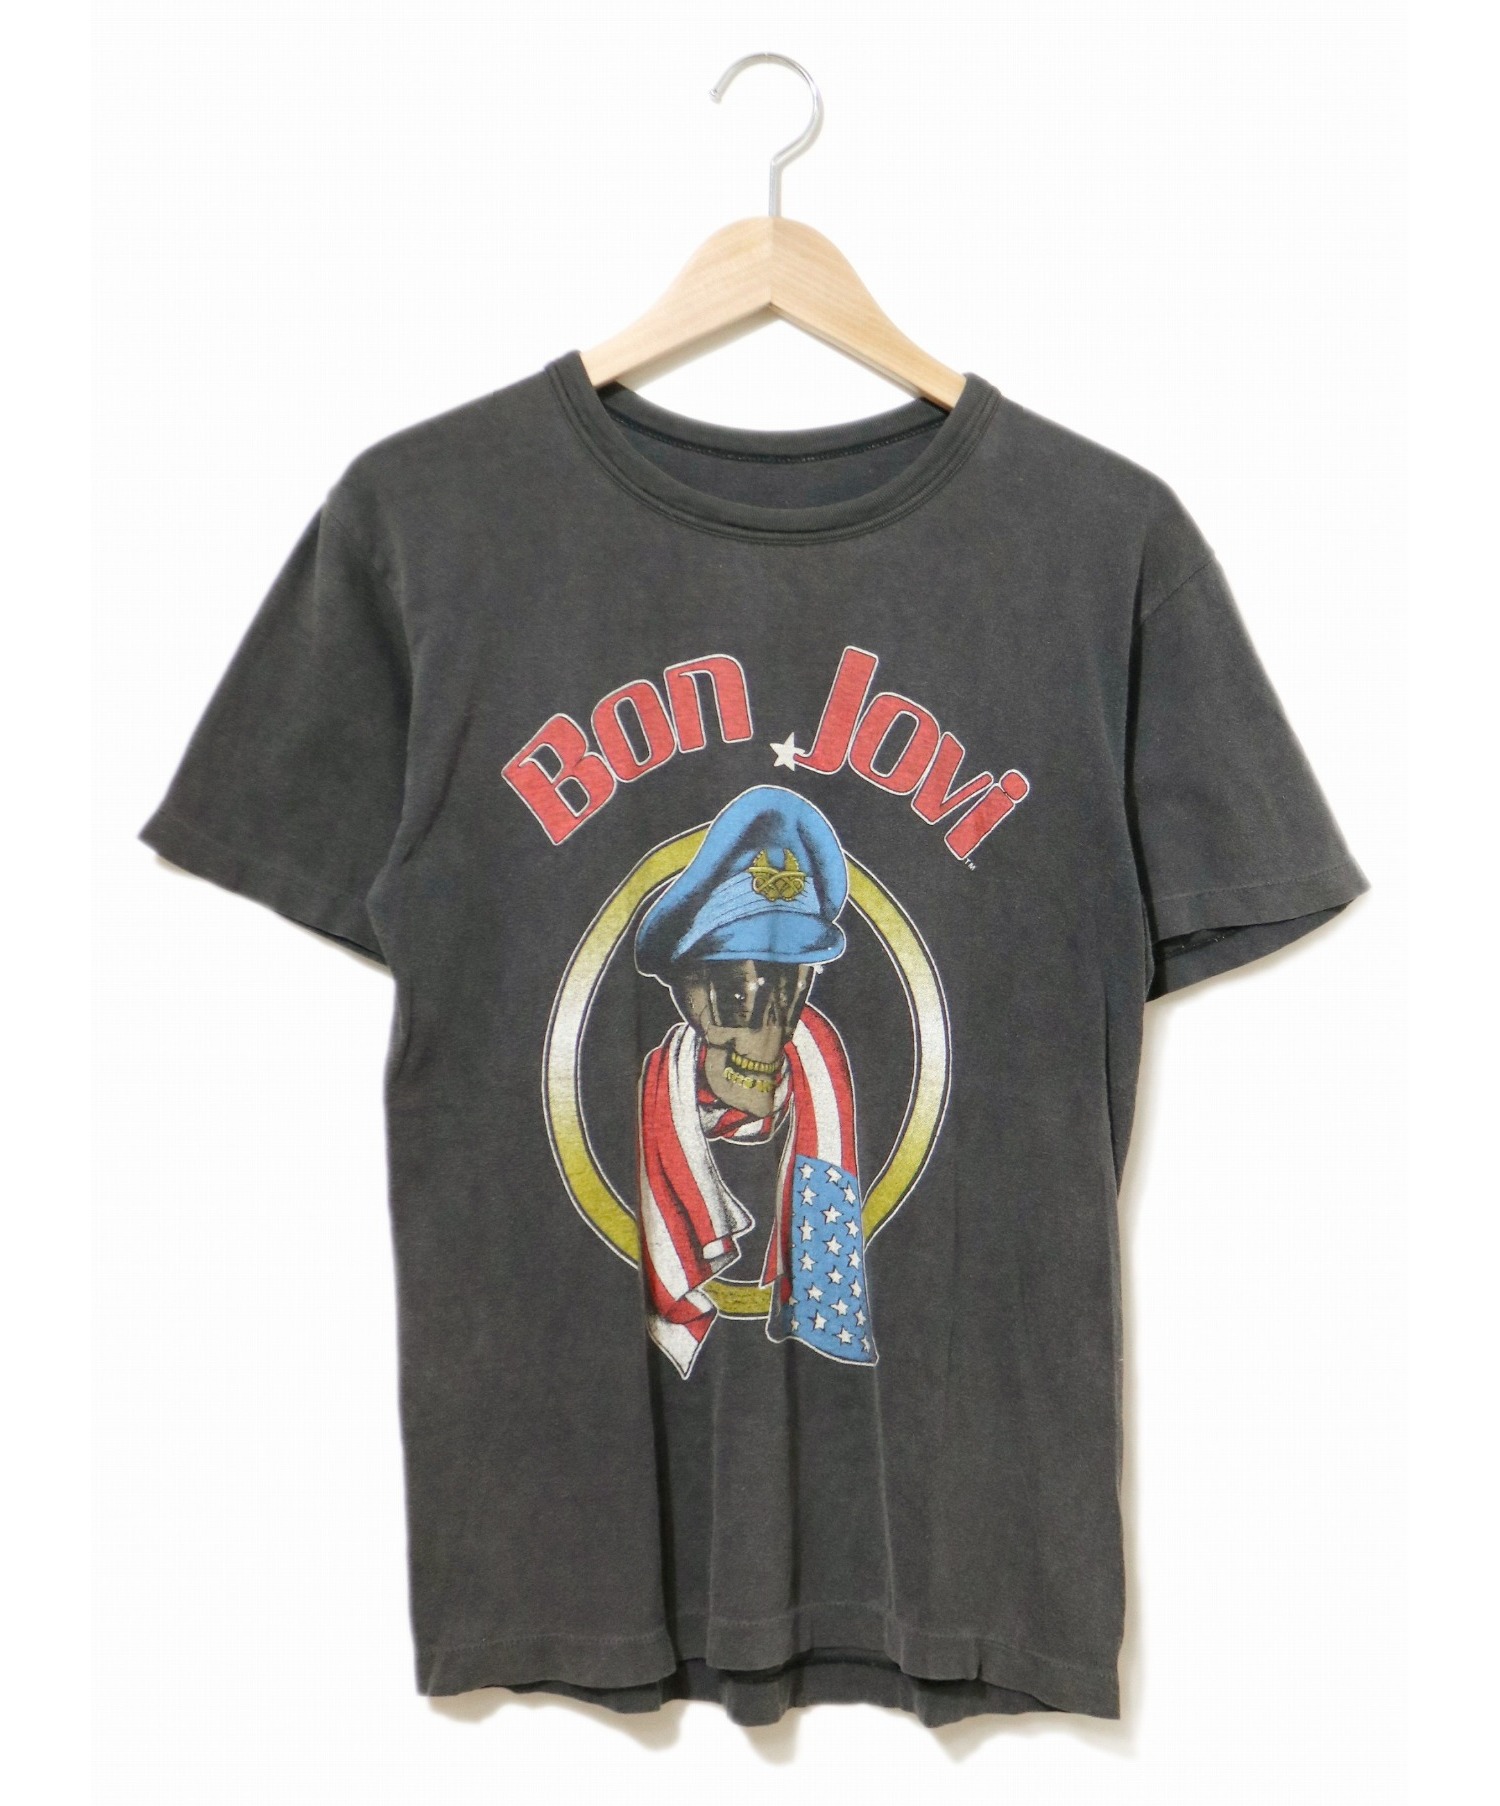 【中古・古着通販】バンドTシャツ (バンドTシャツ) [古着]80’s BON JOVI バンドTシャツ ブラック サイズ:タグなしの為不明